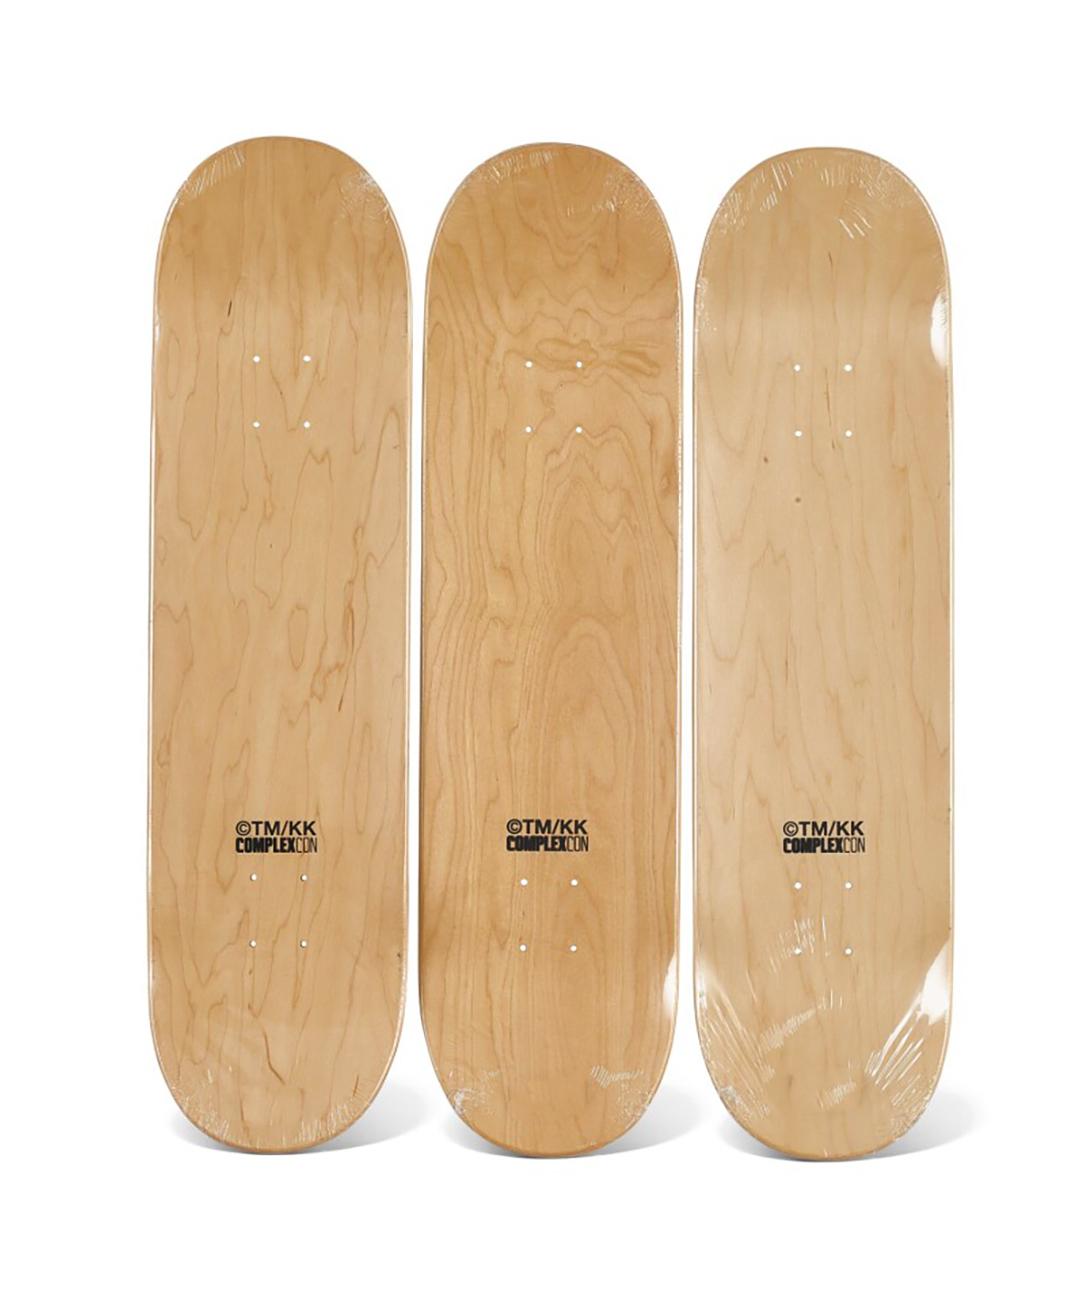 Takashi Murakami Skateboard Decks (set of 3)   For Sale 1